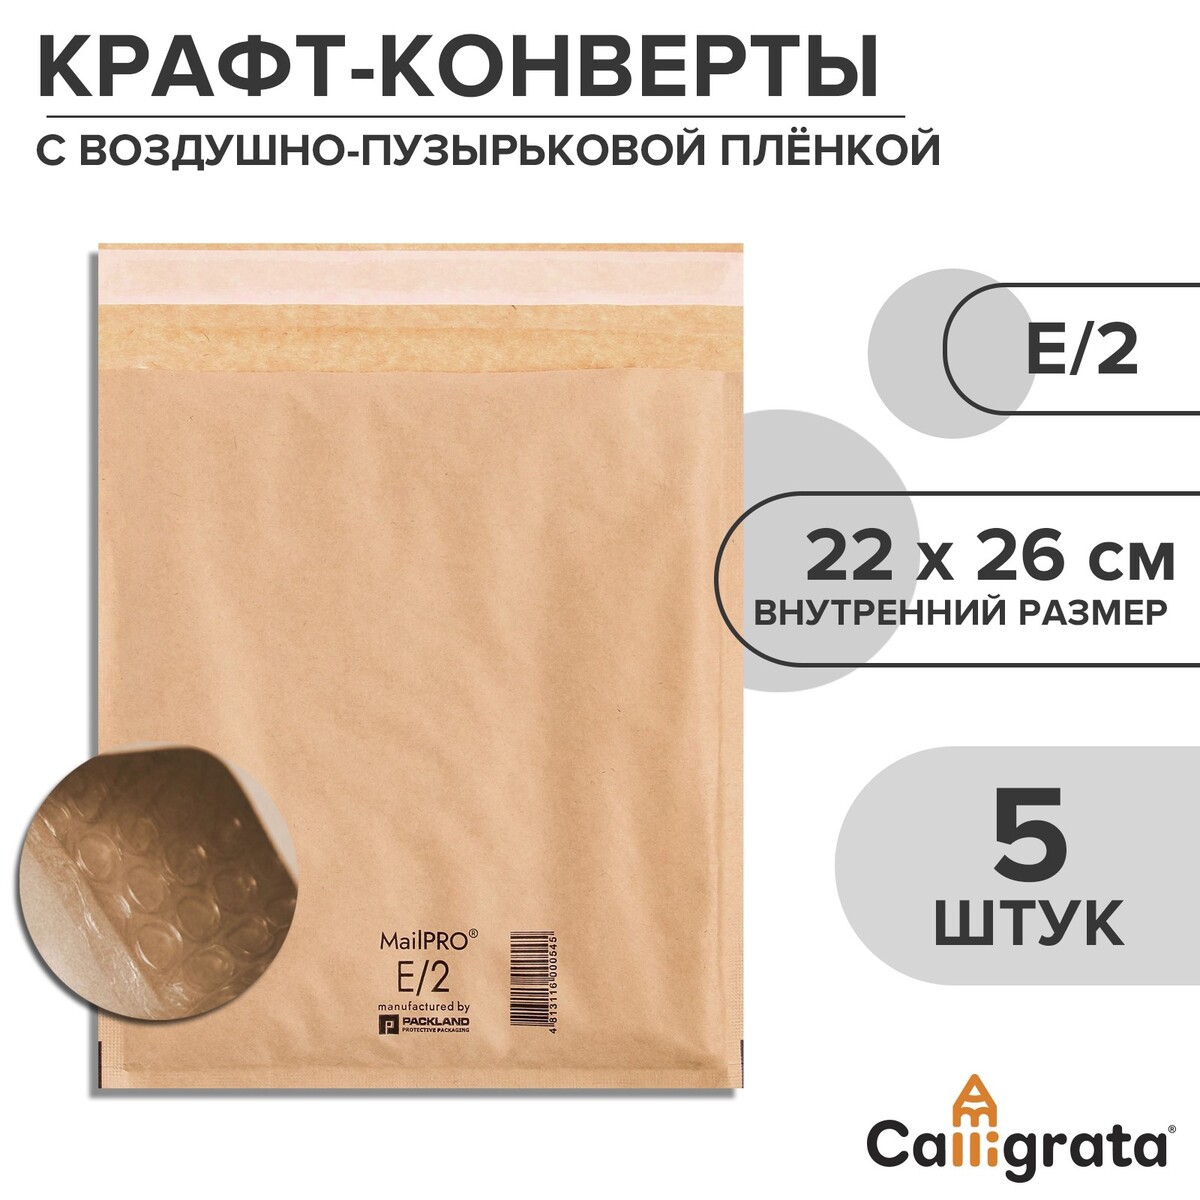 Набор крафт-конвертов с воздушно-пузырьковой пленкой mailpro e/2, 22 х 26 см, 5 штук, kraft набор зажимов для пакета 8 см 5 шт микс